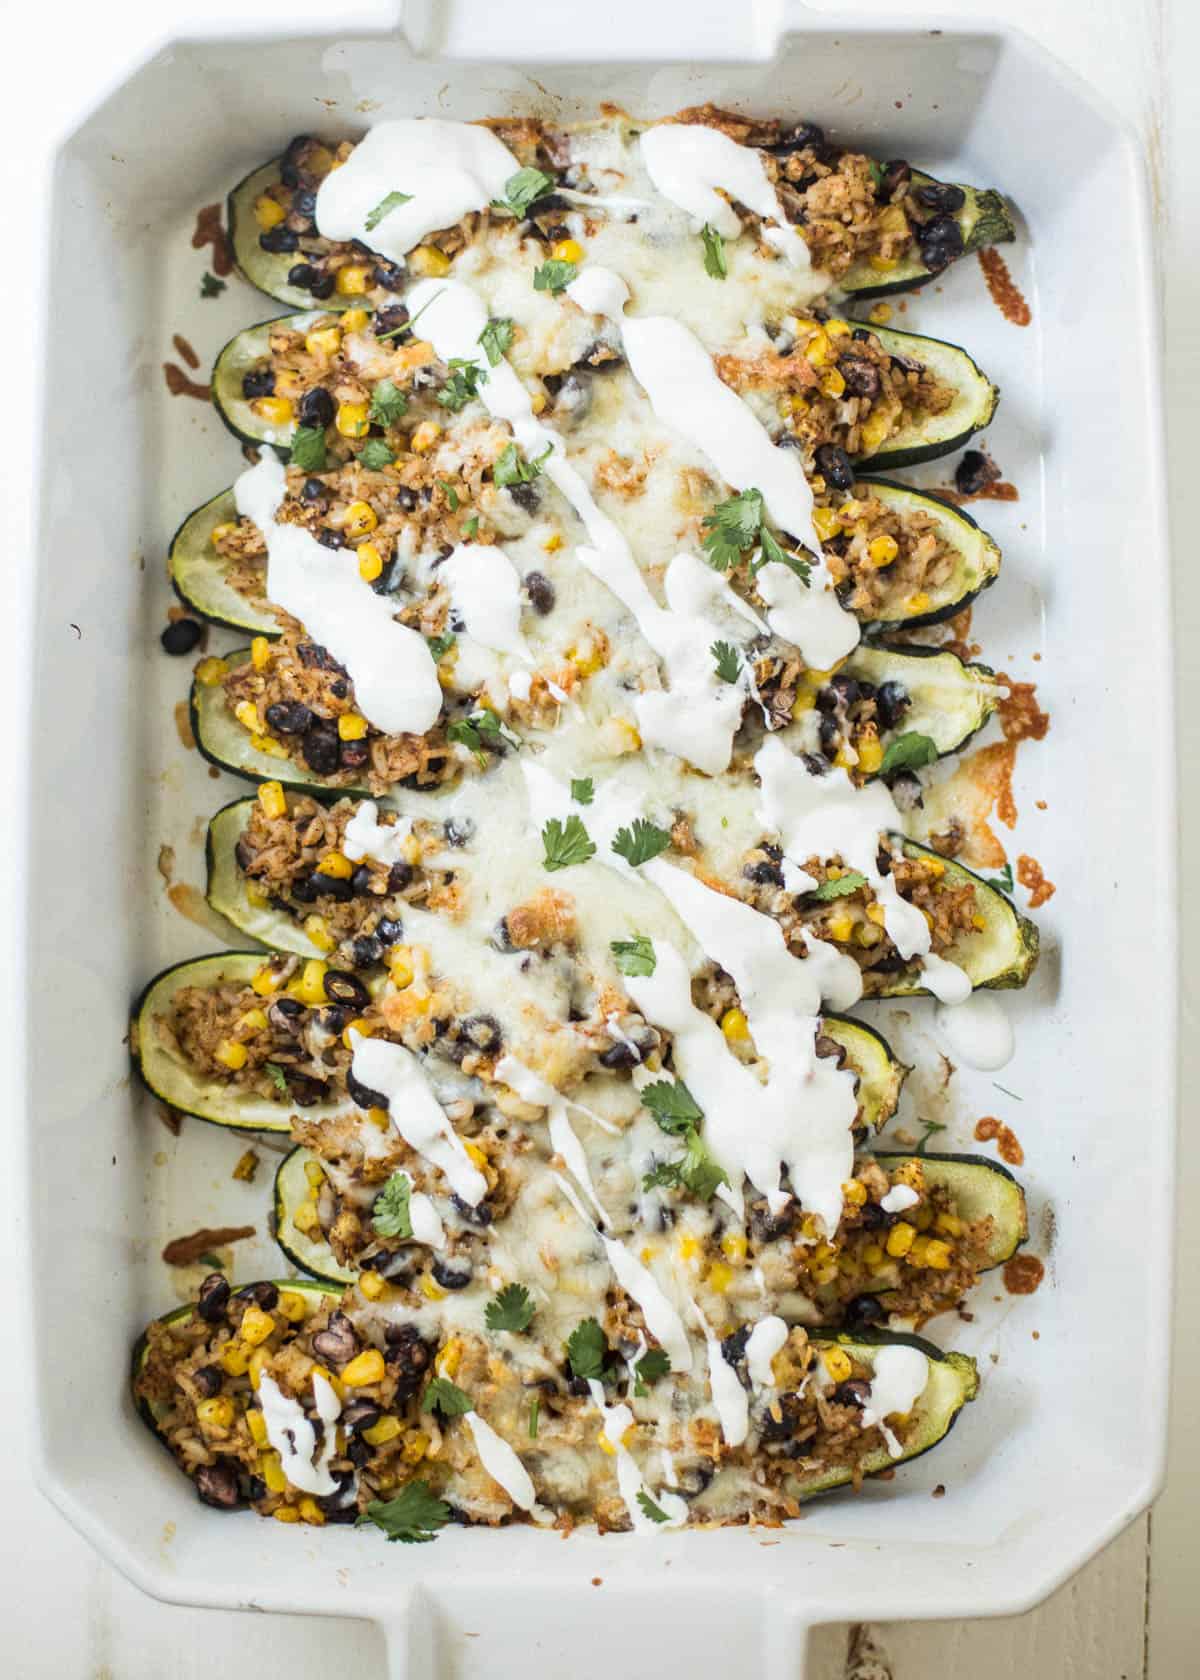 stuffed zucchini boats in a white dish